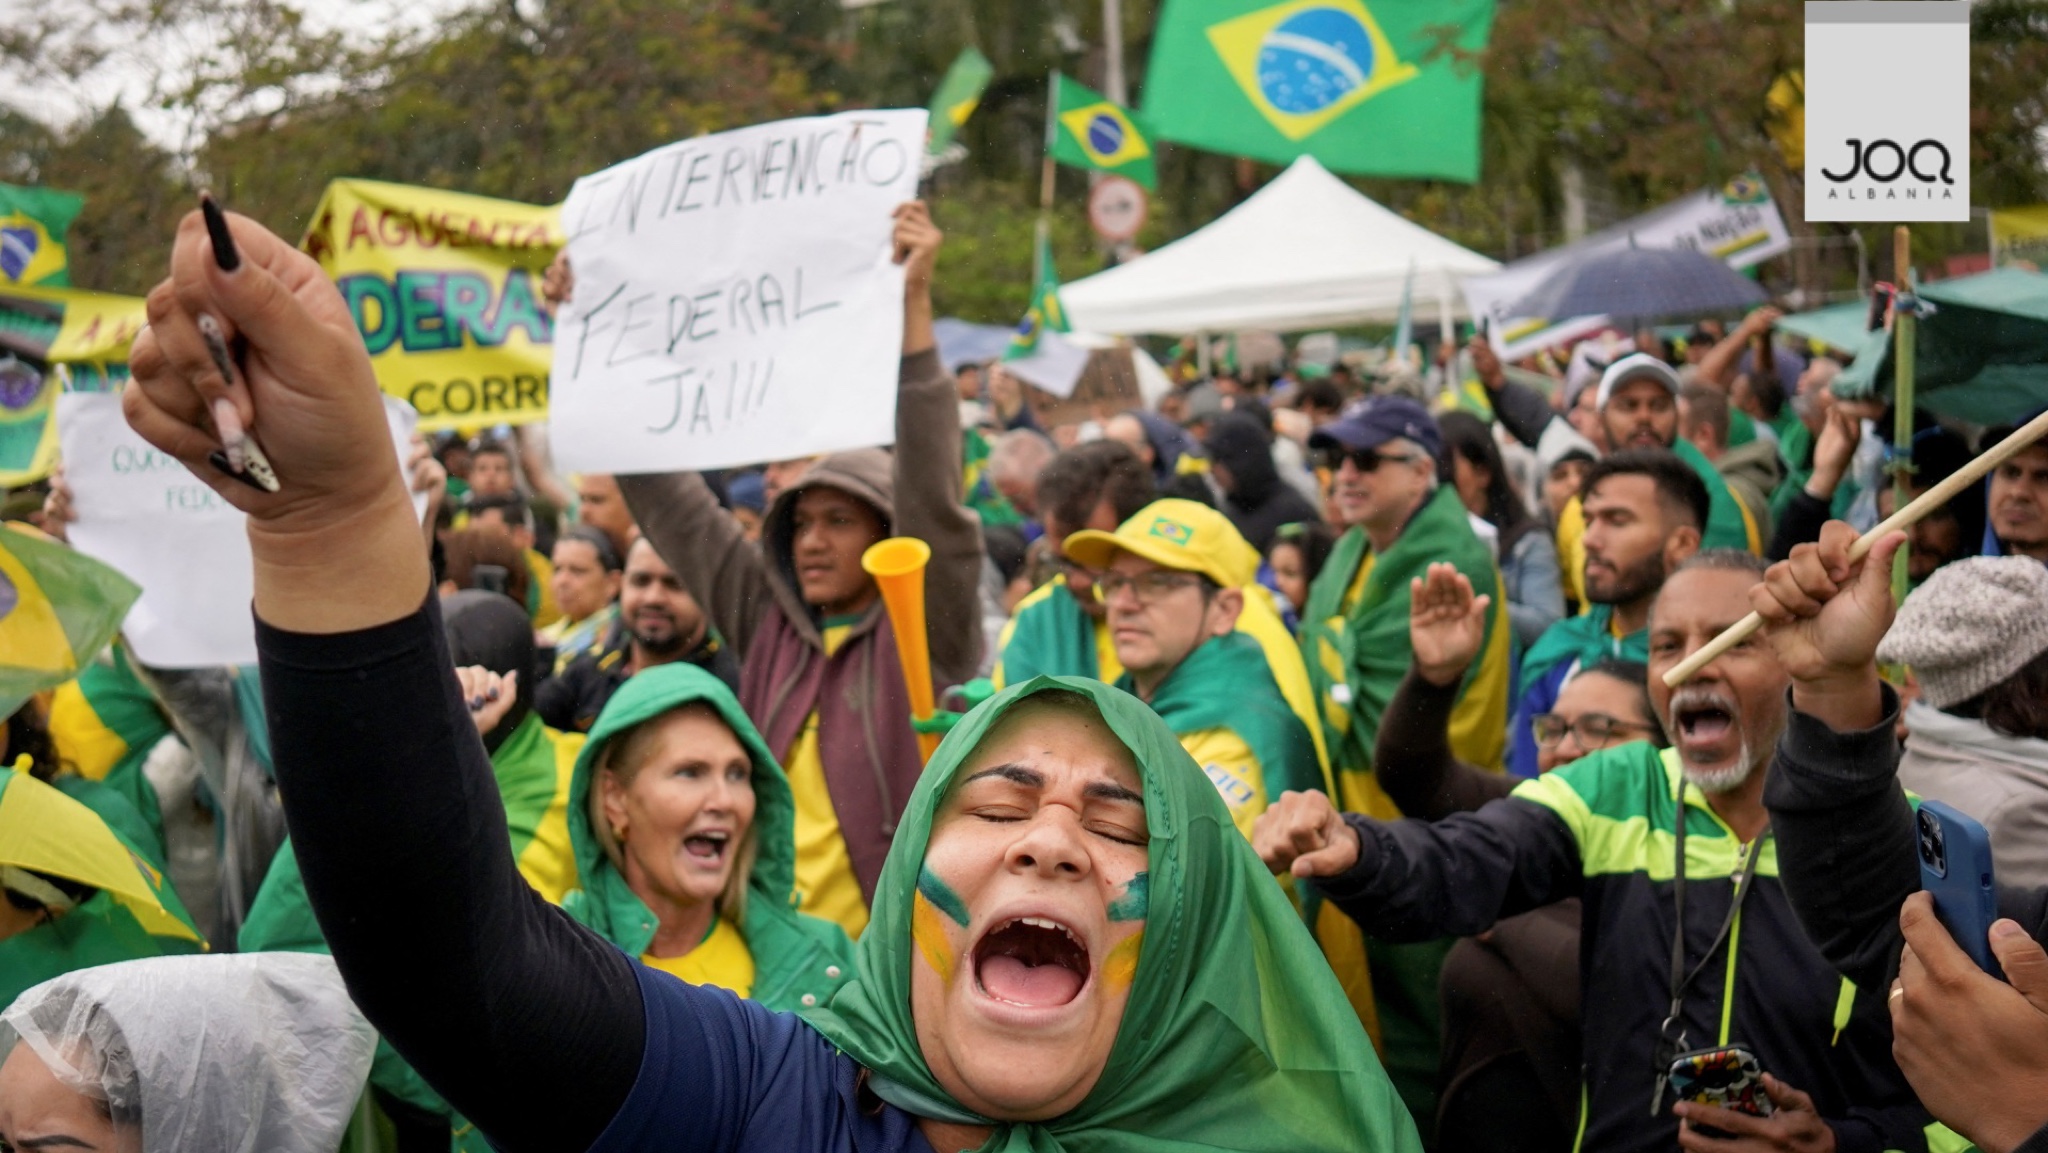 Si në DIKTATURË! Brazili do persekutojë mbështetësit e konservatorit Bolsonaro